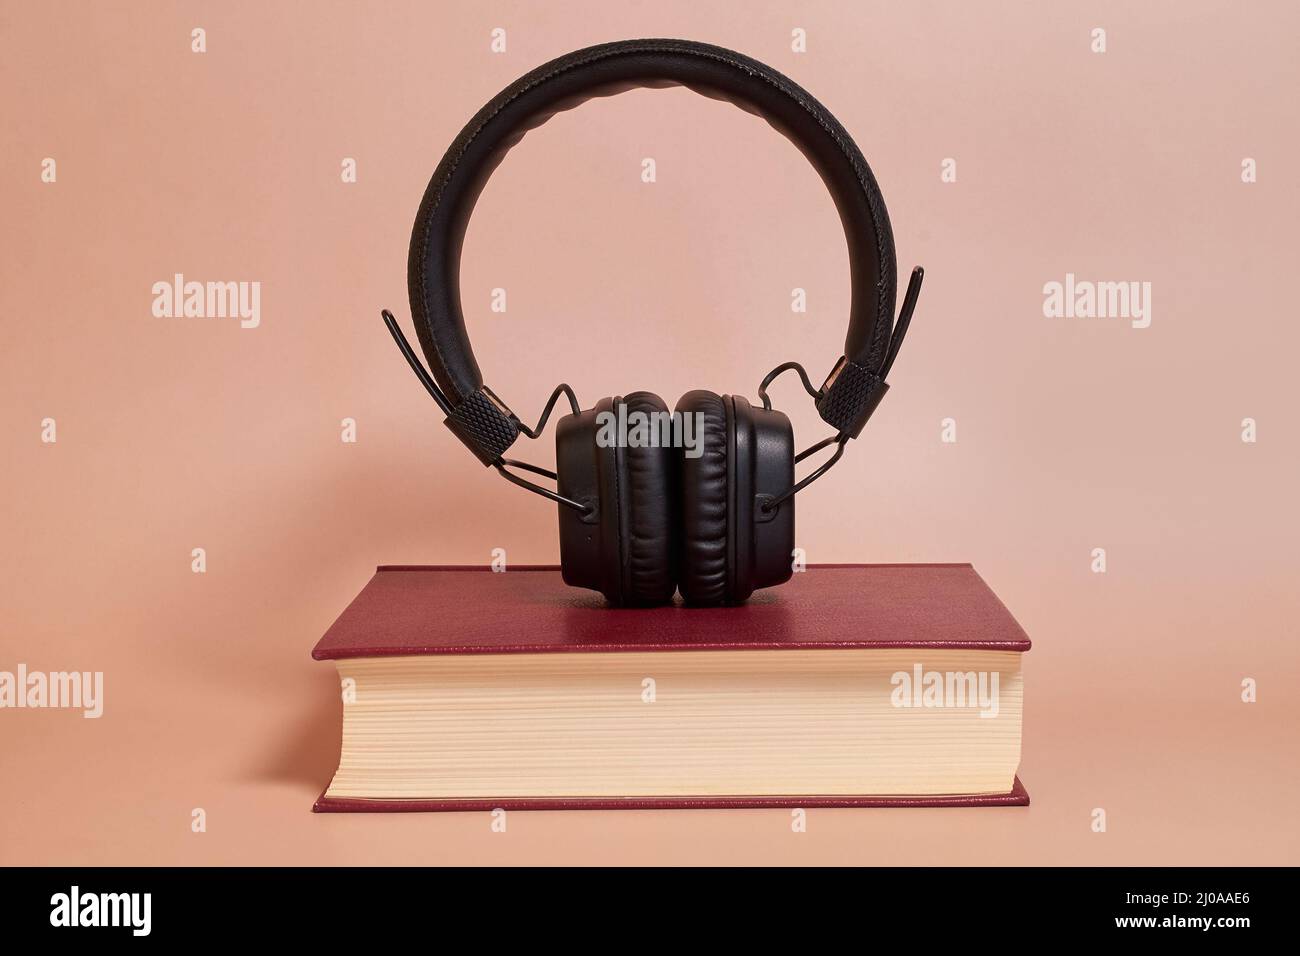 Hörbuch. Die Kopfhörer stehen auf einem Buch auf einem farbigen Hintergrund Stockfoto